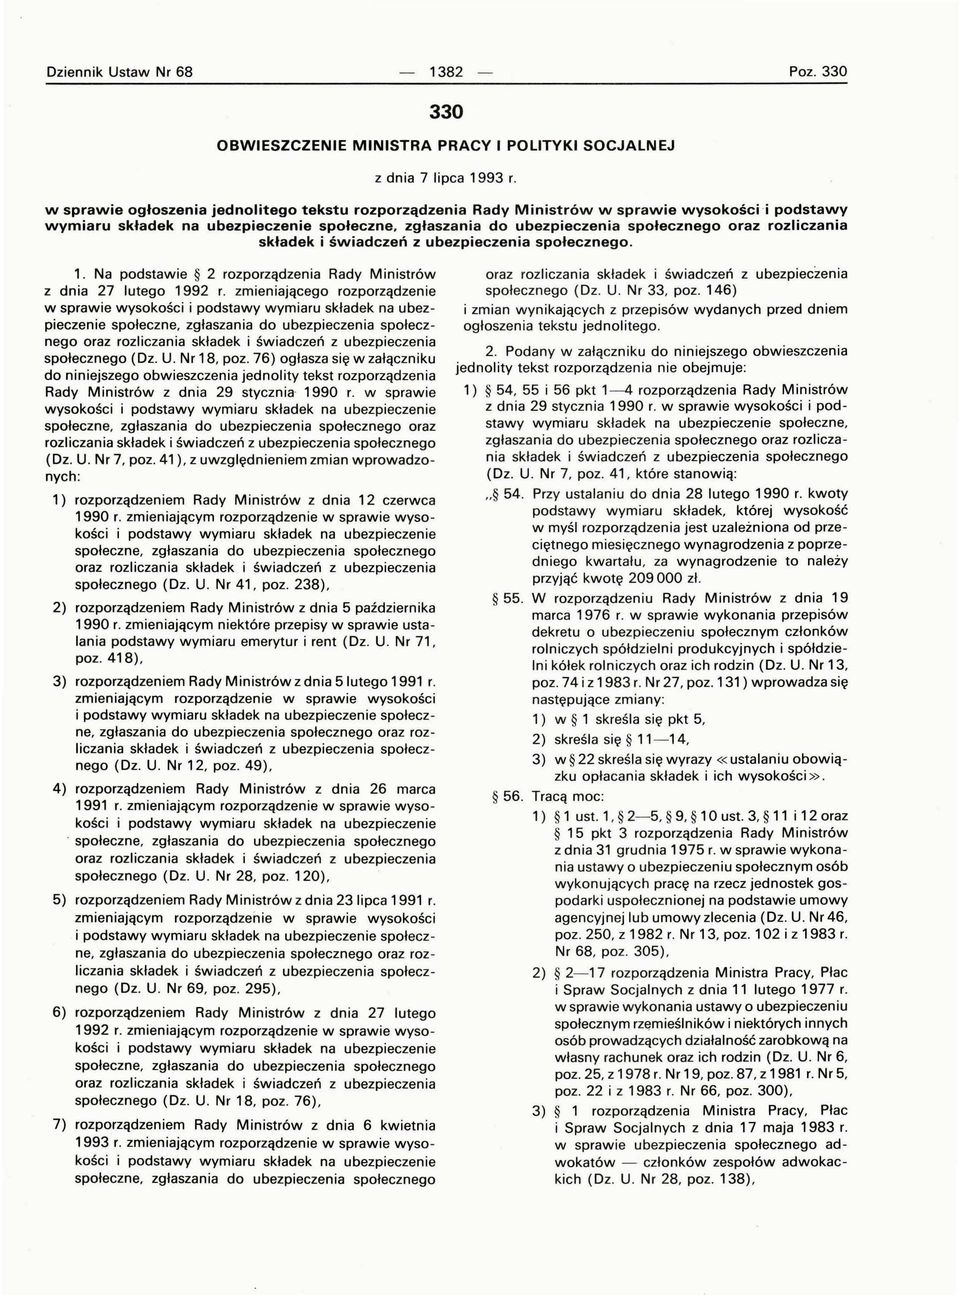 rozliczania składek i świadczeń z ubezpieczenia społecznego. 1. Na podstawie 2 rozporządzenia Rady Ministrów z dnia 27 lutego 1992 r.